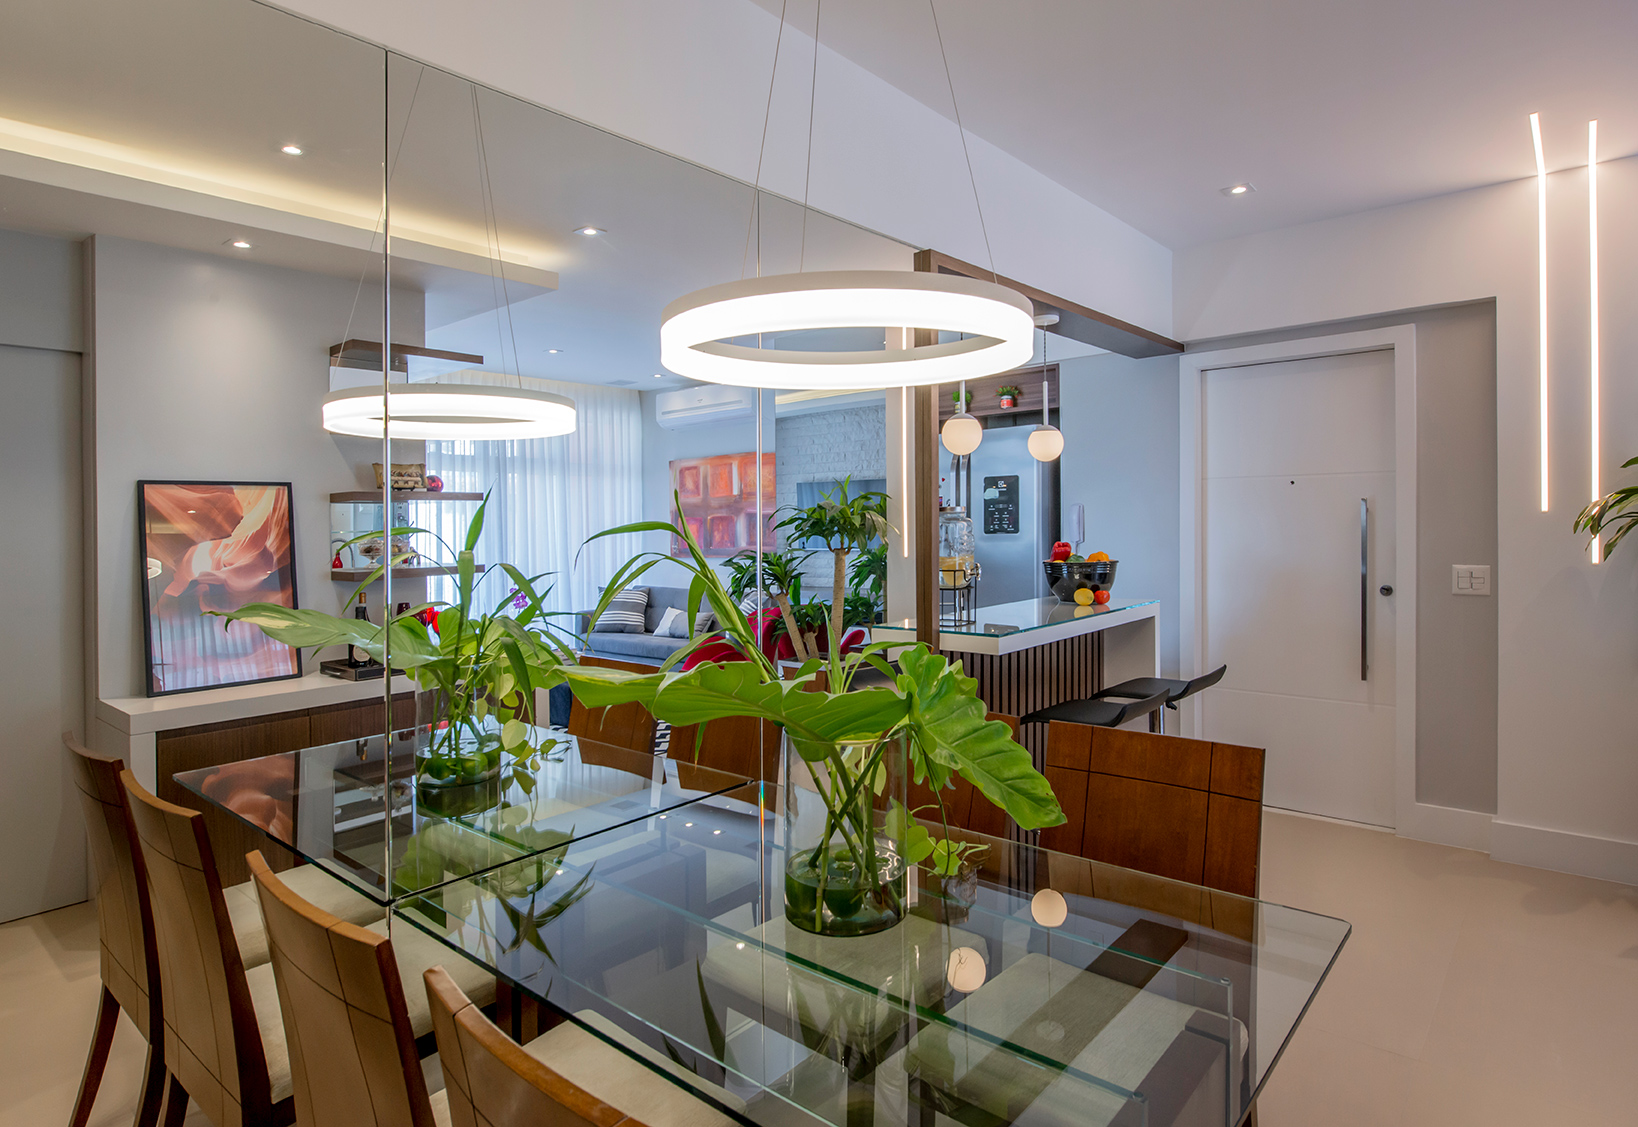 Apê de 90 m² ganha layout funcional após troca de paredes de lugar. Projeto de Campos & Olivetti Arquitetura. Na foto, sala de jantar com parede de espelho e cozinha integrada.